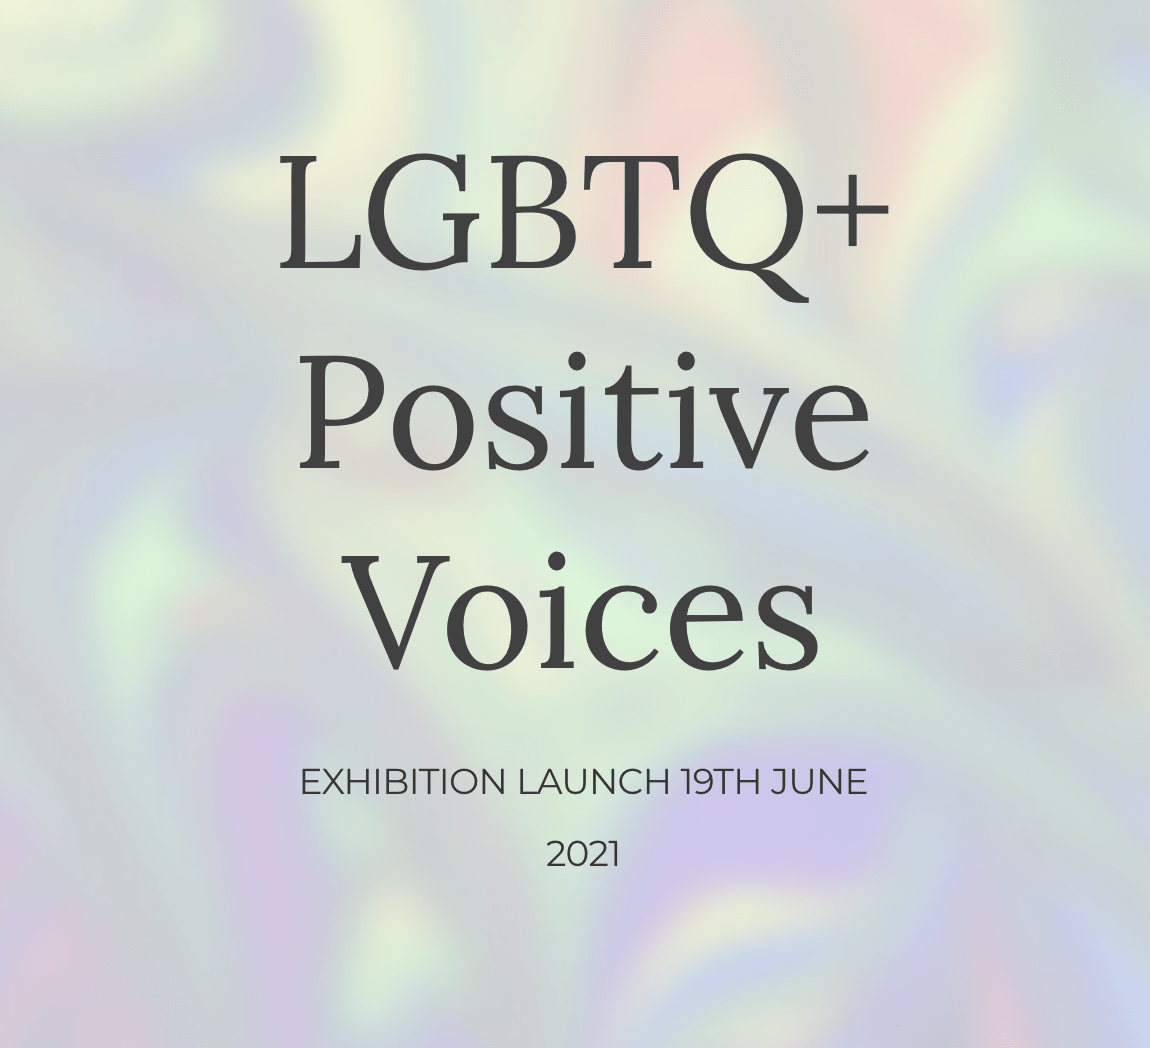 LGBTQ+ Positive Voices Exhibition